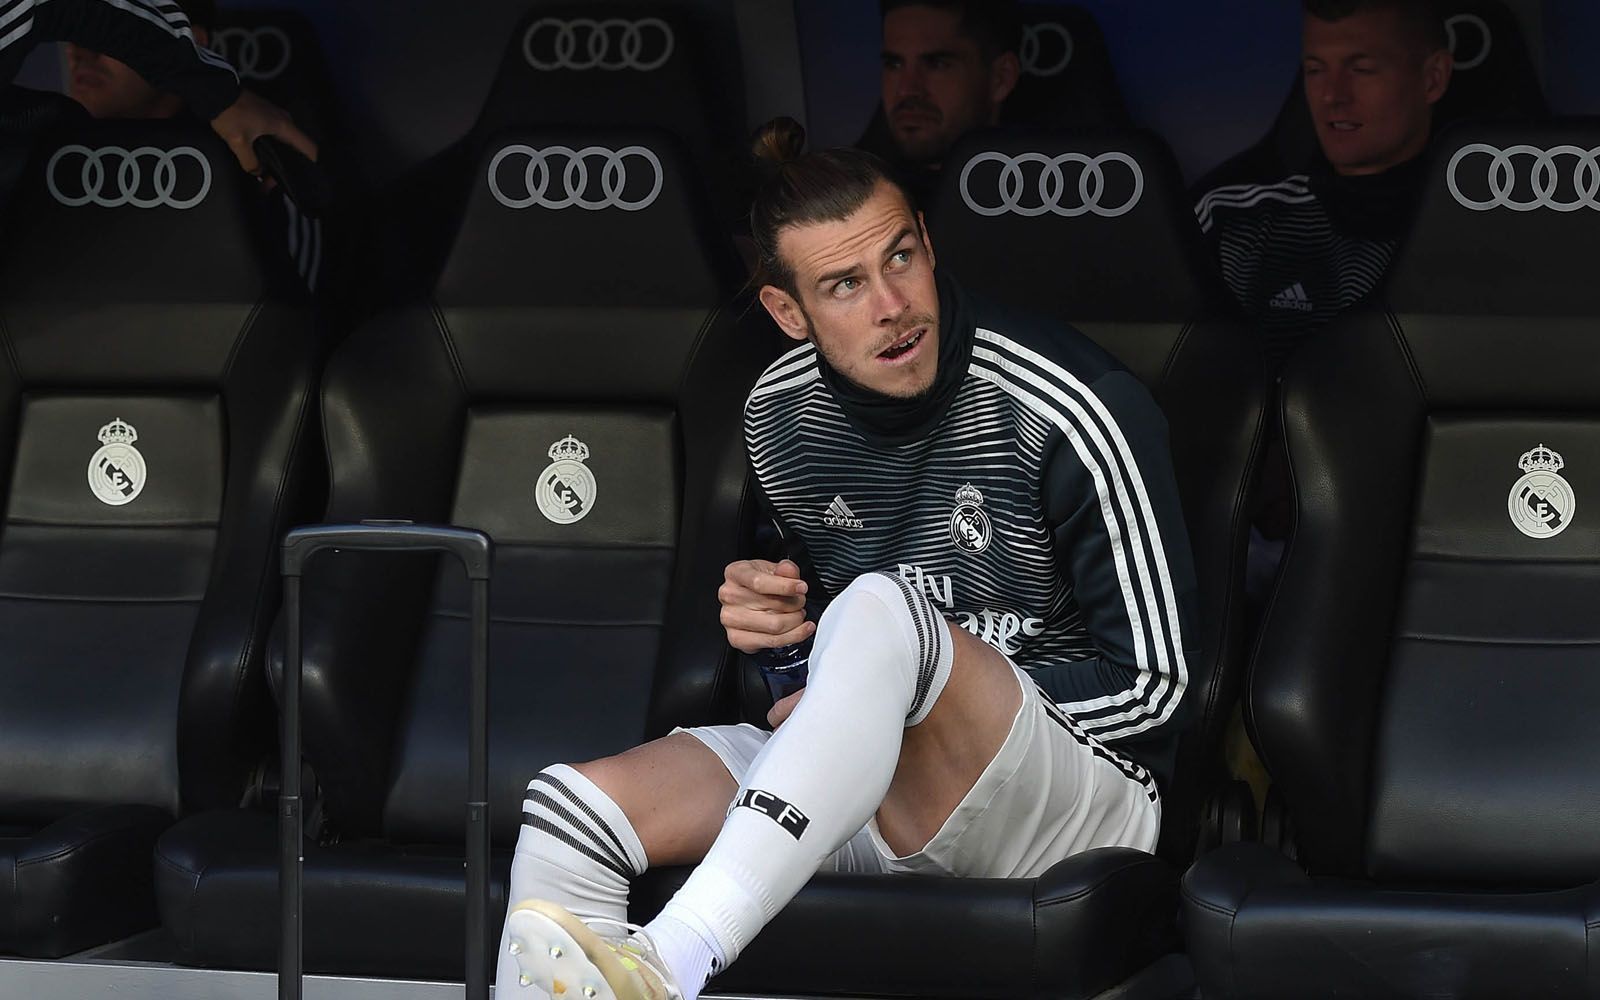 
                <strong>Gareth Bale</strong><br>
                Der Abschied des einst teuersten Spielers des Planeten scheint besiegelt, nach sechs gemeinsamen Jahren und 14 Titeln scheinen sich die Wege von Gareth Bale und Real Madrid zu trennen. Der Waliser, dessen Vertrag noch bis 2022 läuft, spielte unter Zidane keine Rolle mehr, musste zumeist auf der Bank Platz nehmen. Ob es Bale zurück auf die Insel zieht oder tatsächlich der FC Bayern ein ernsthafter Kandidat sein könnte, ist noch offen. Auch PSG soll sich angeblich mit dem 29-Jährigen beschäftigen.    
              